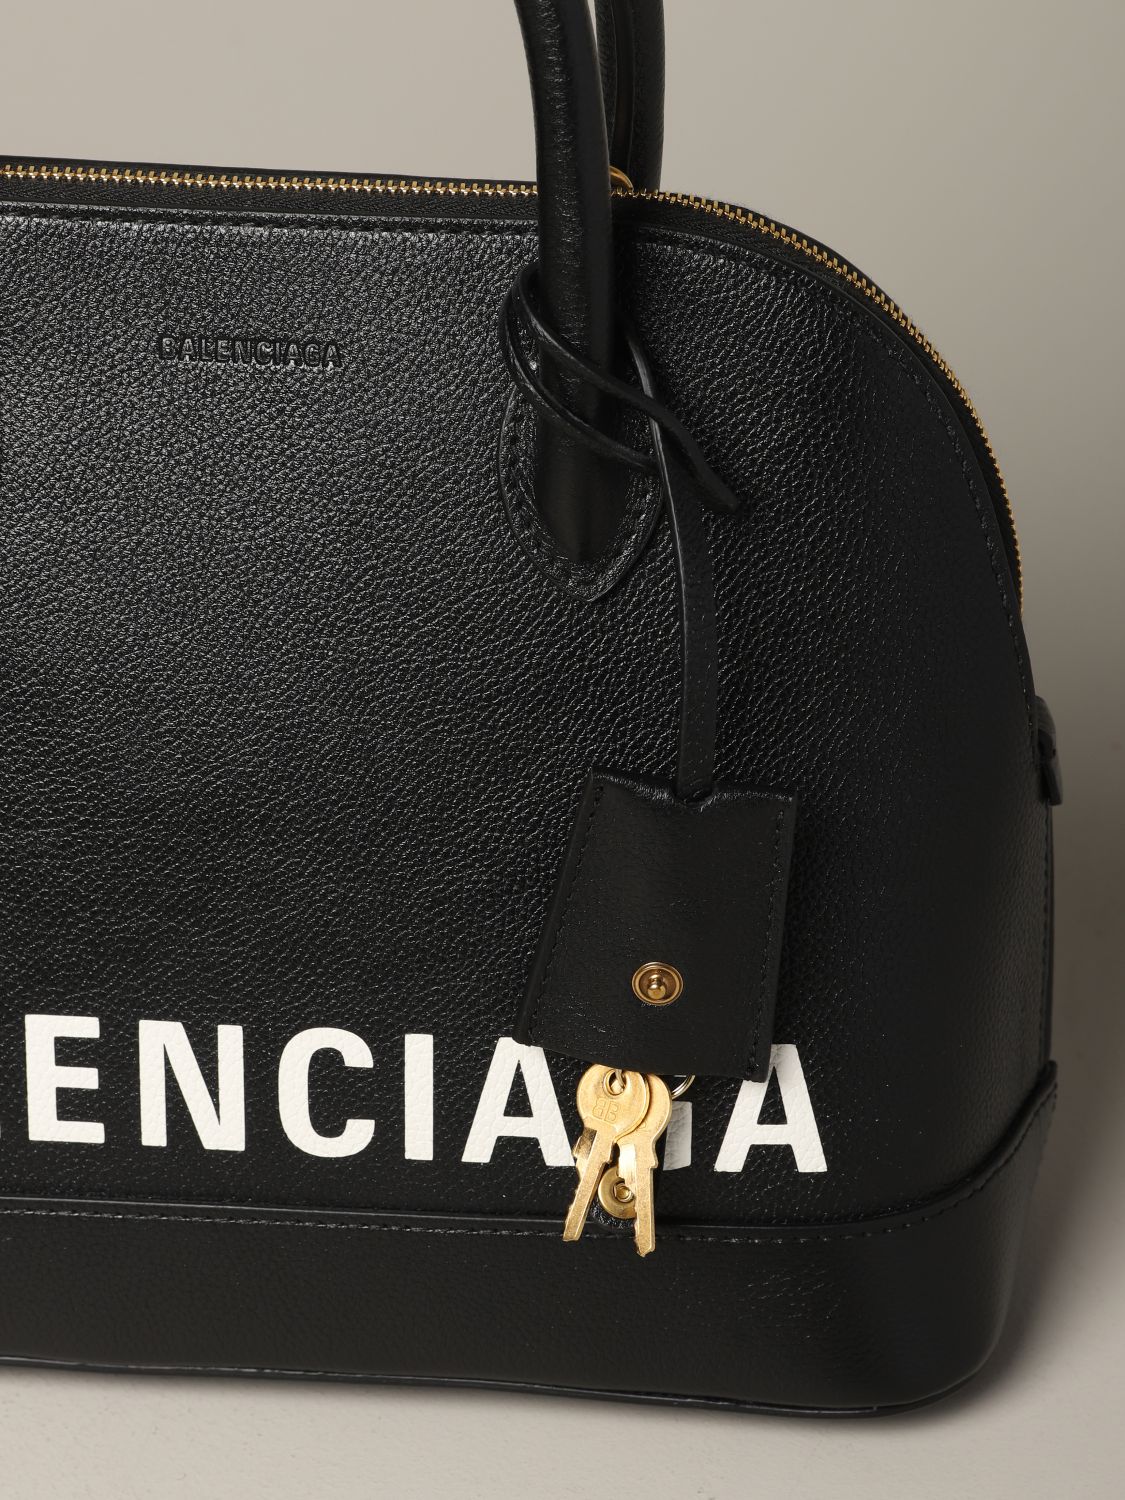 BALENCIAGA: Ville S bag with logo - | Balenciaga handbag 550645 1IZ1M on GIGLIO.COM